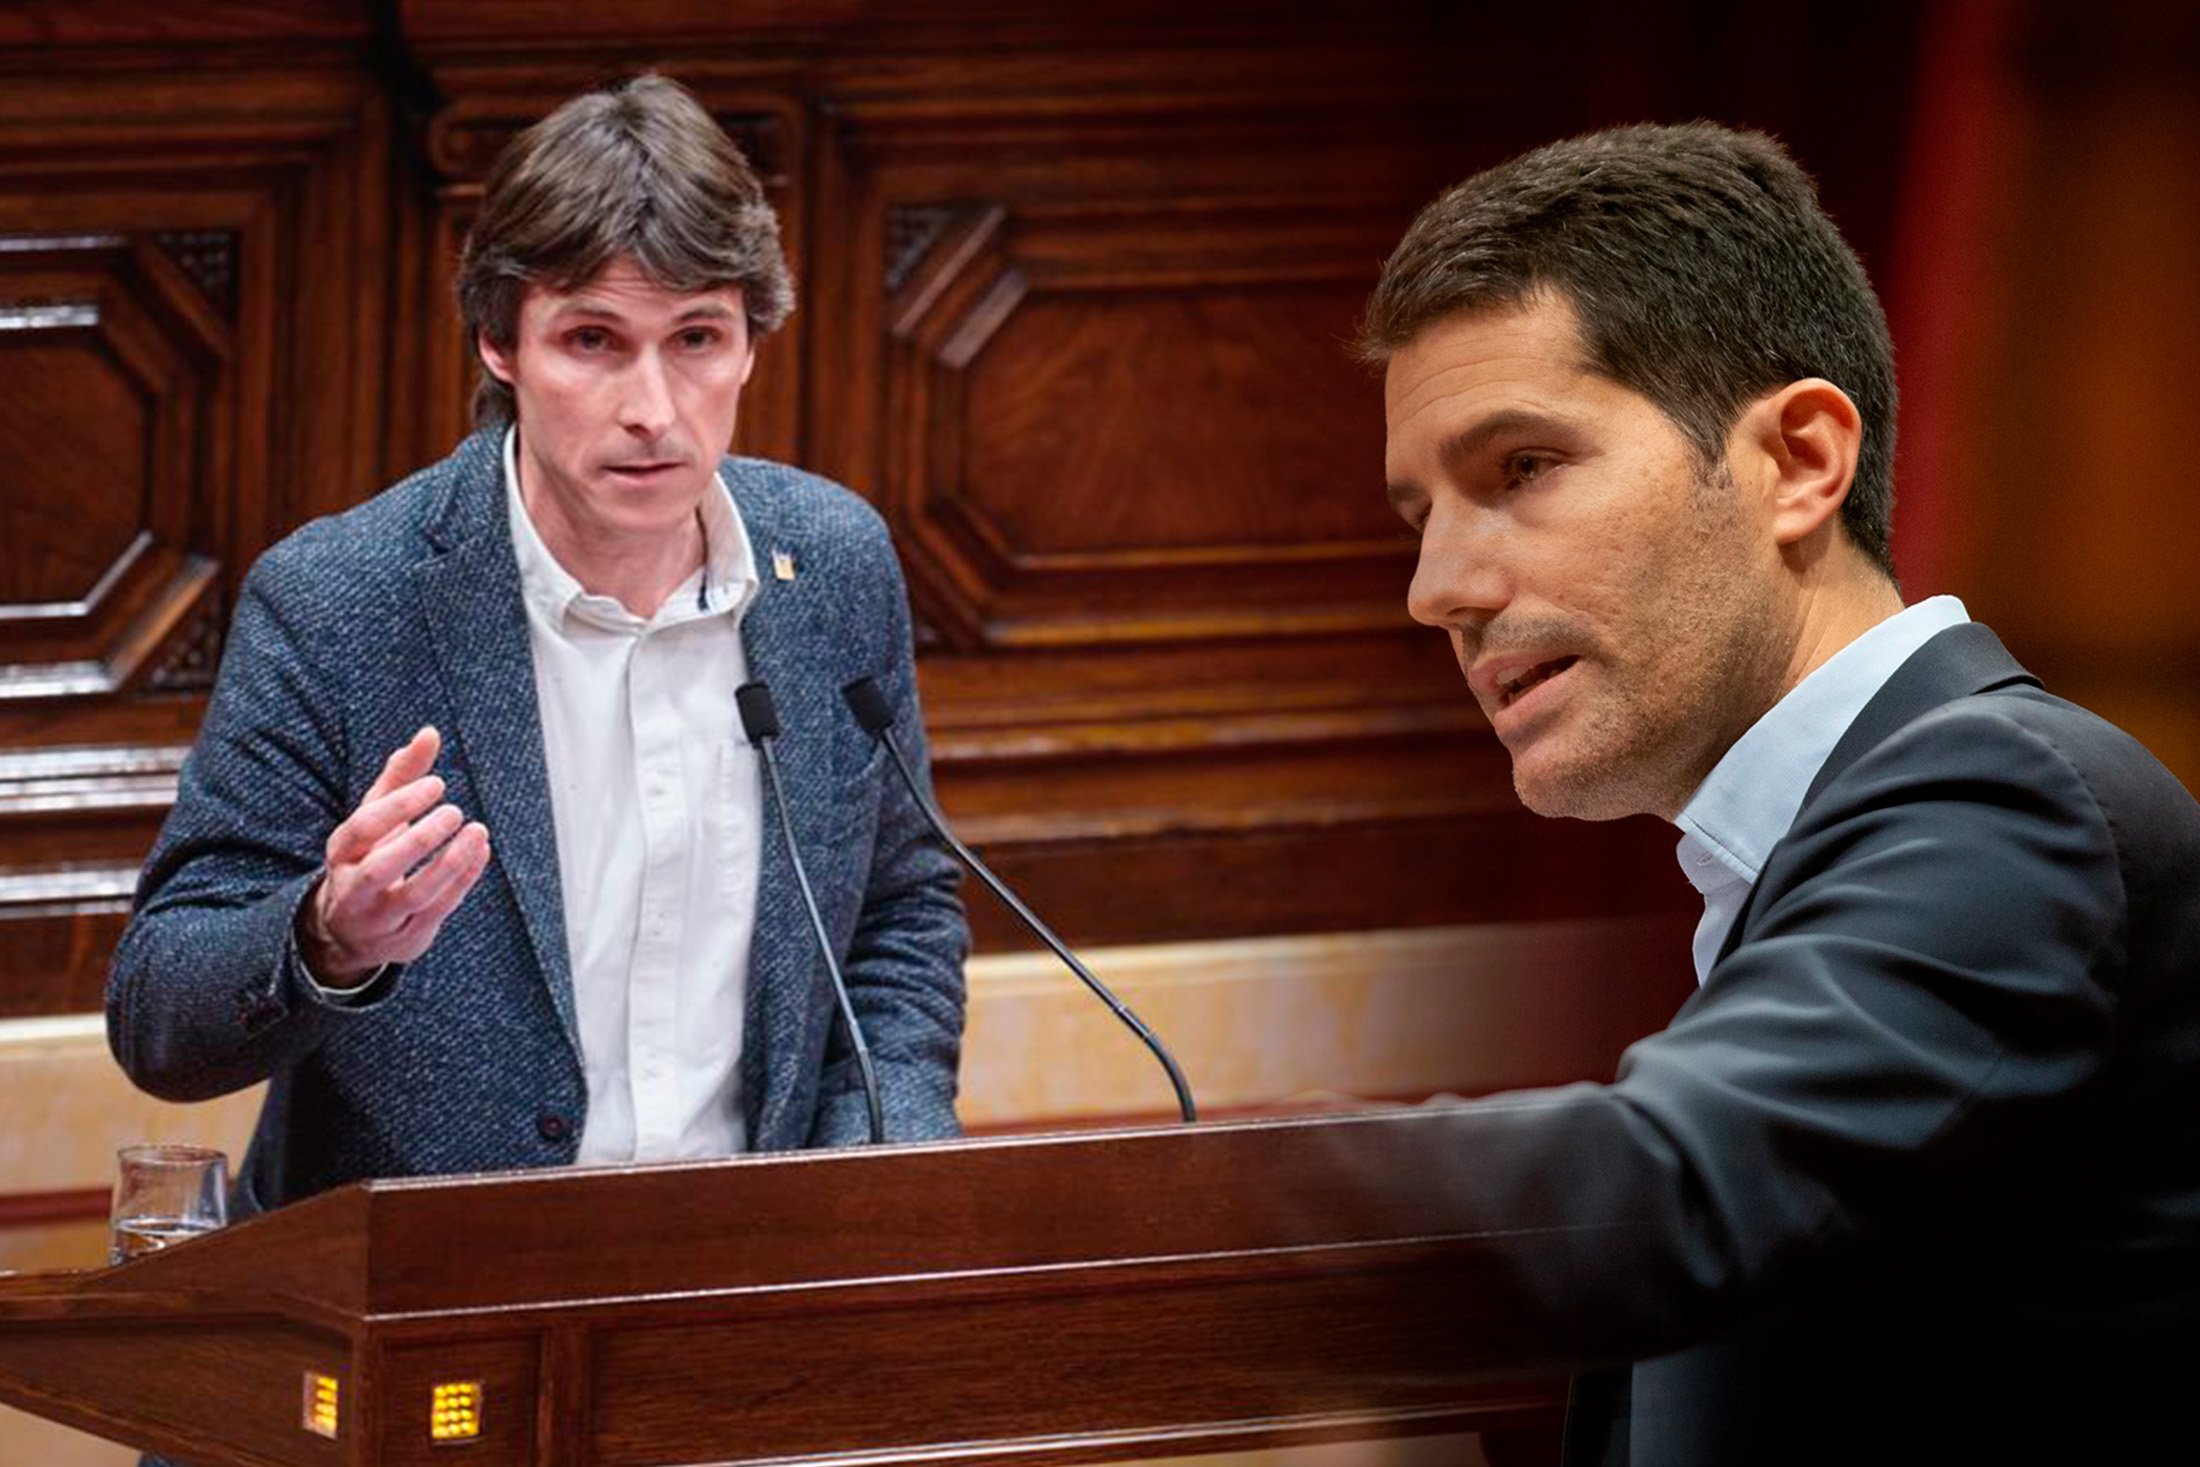 Foc creuat entre diputats al Parlament amb acusacions de catalanofòbia i hispanofòbia